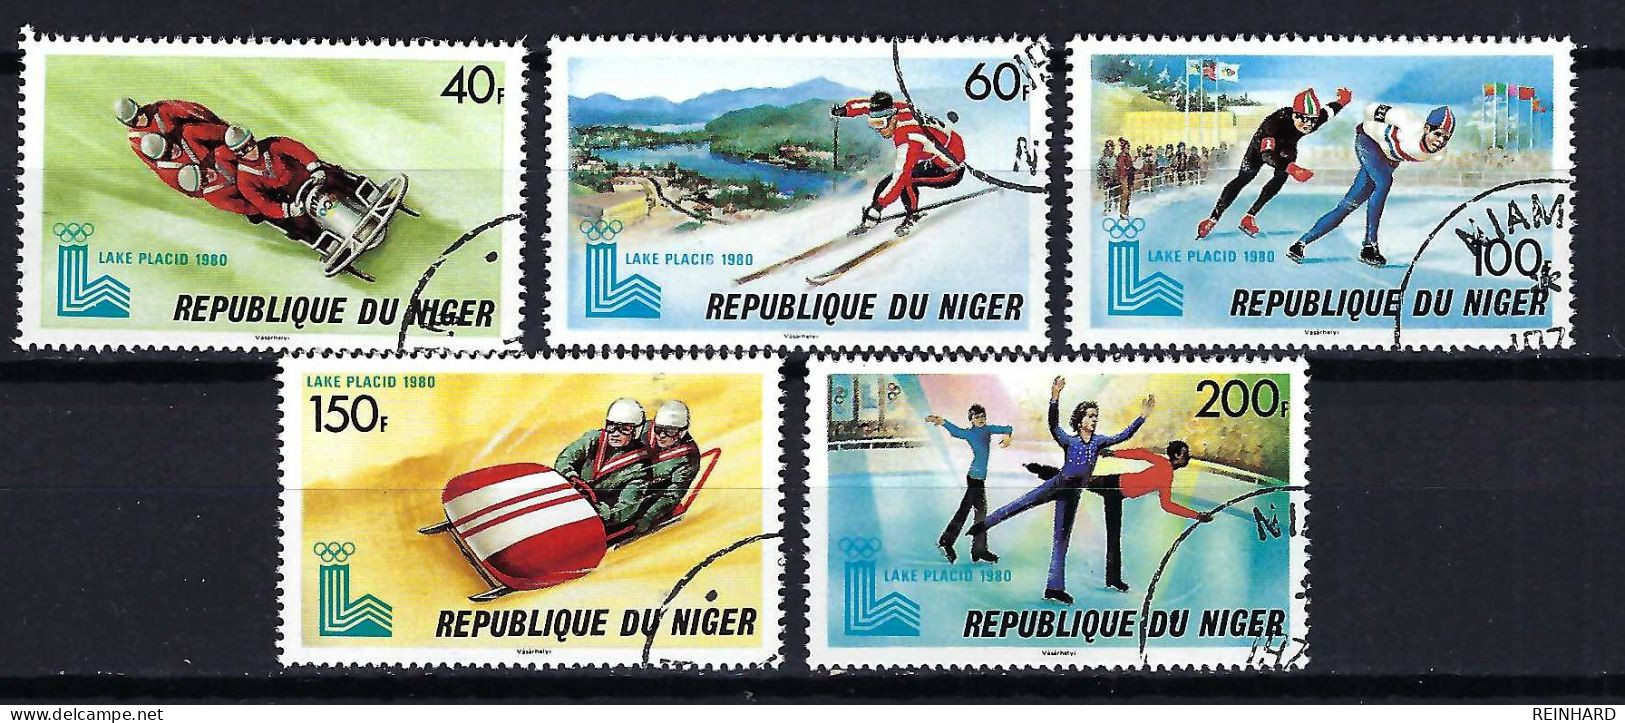 NIGER Komplettsatz Mi-Nr. 685 - 689 Olympische Winterspiele, Lake Placid 1980 Gestempelt - Siehe Bild - Niger (1960-...)